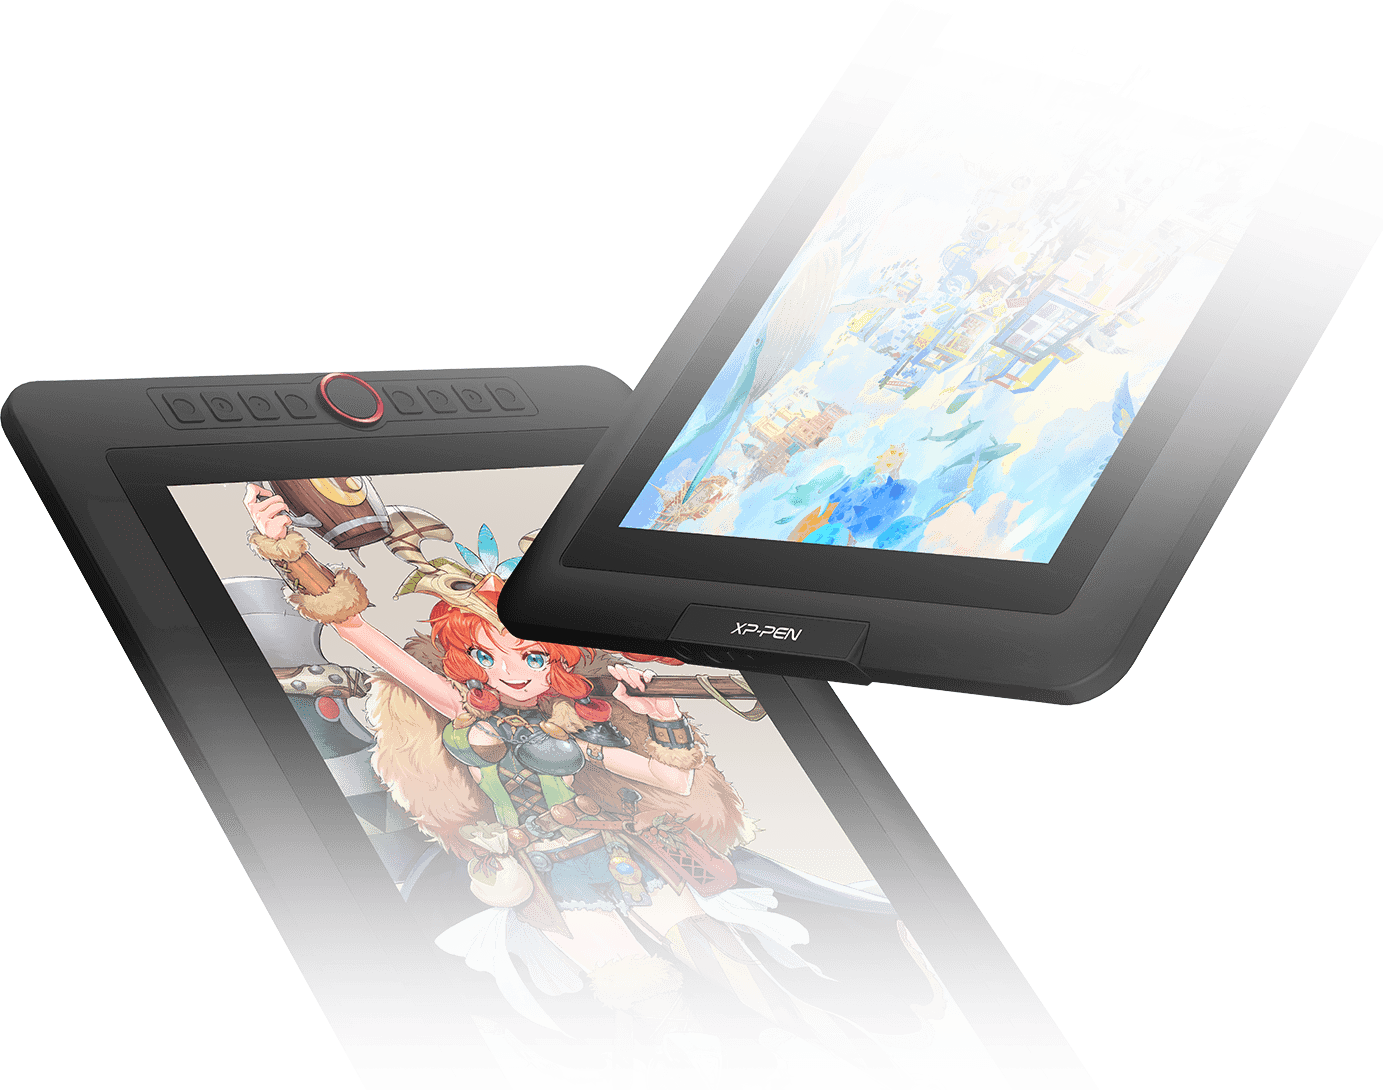  tela digitalizadora XP-Pen Artist 15.6 Pro possui 8 teclas de atalho totalmente personalizáveis 